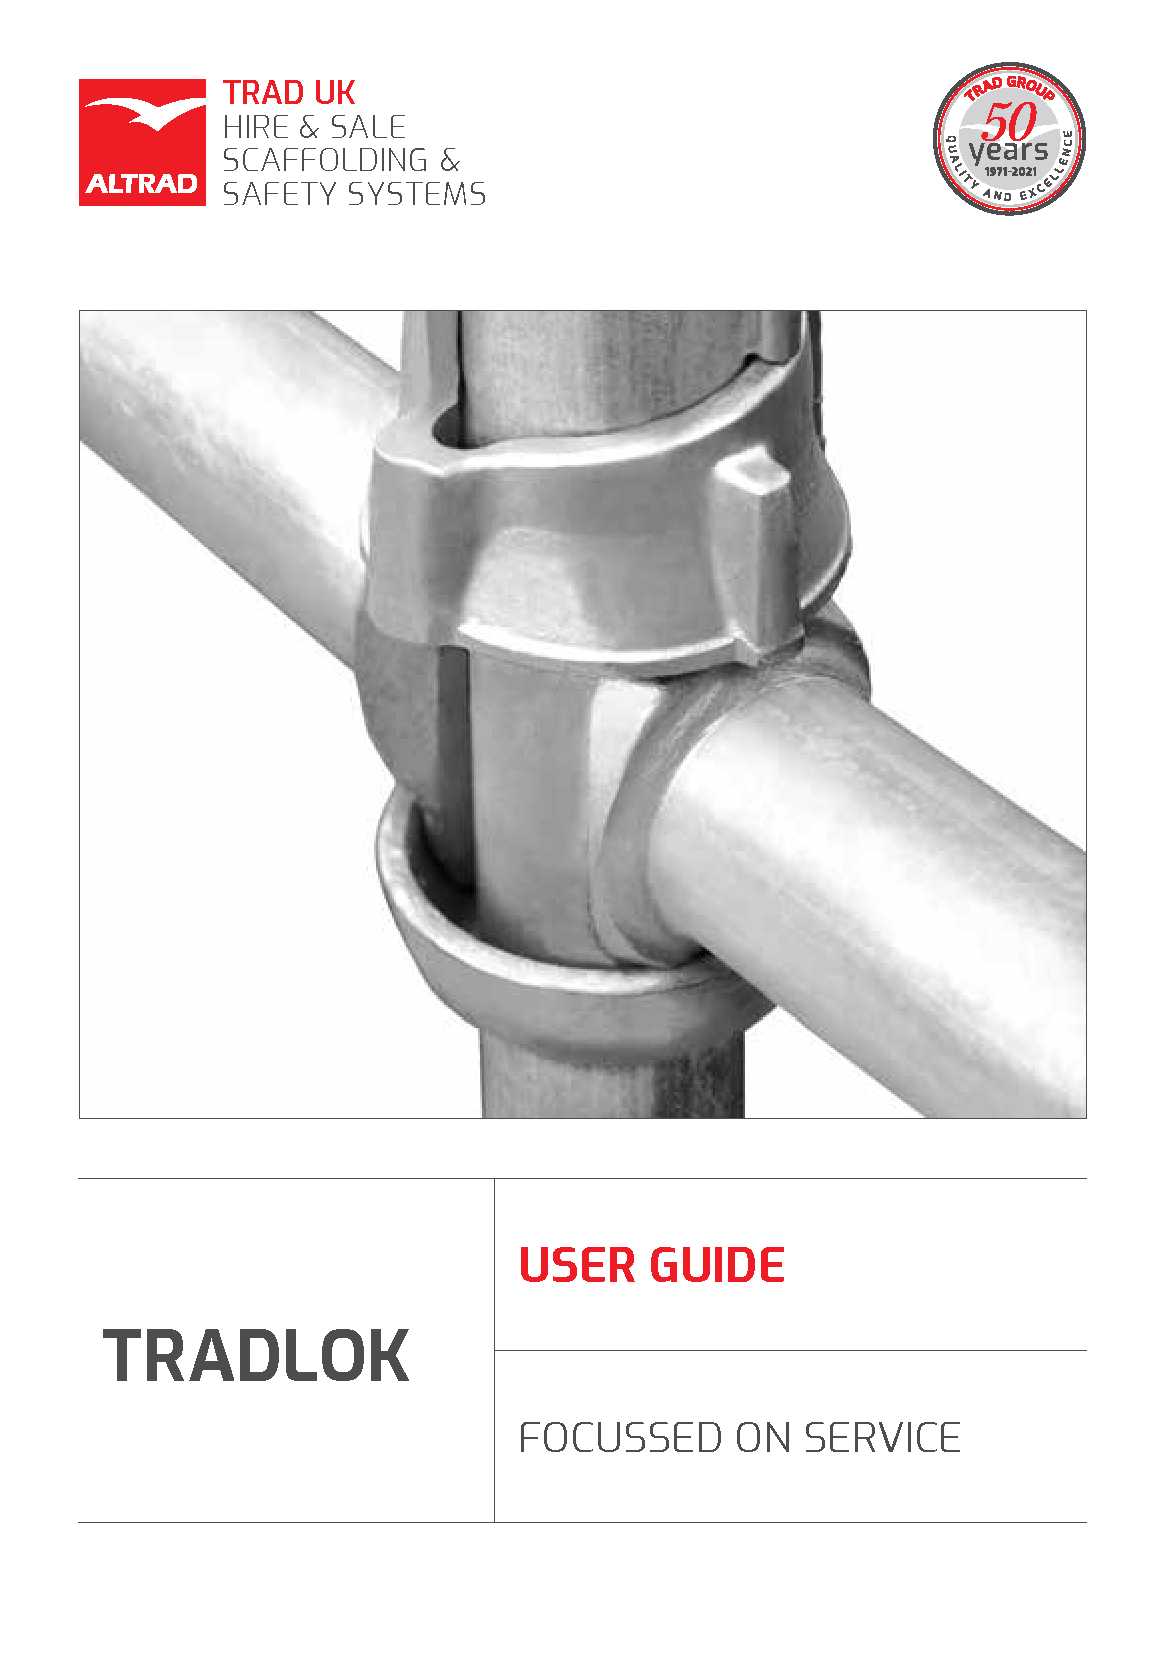 TRADLOK User Guide